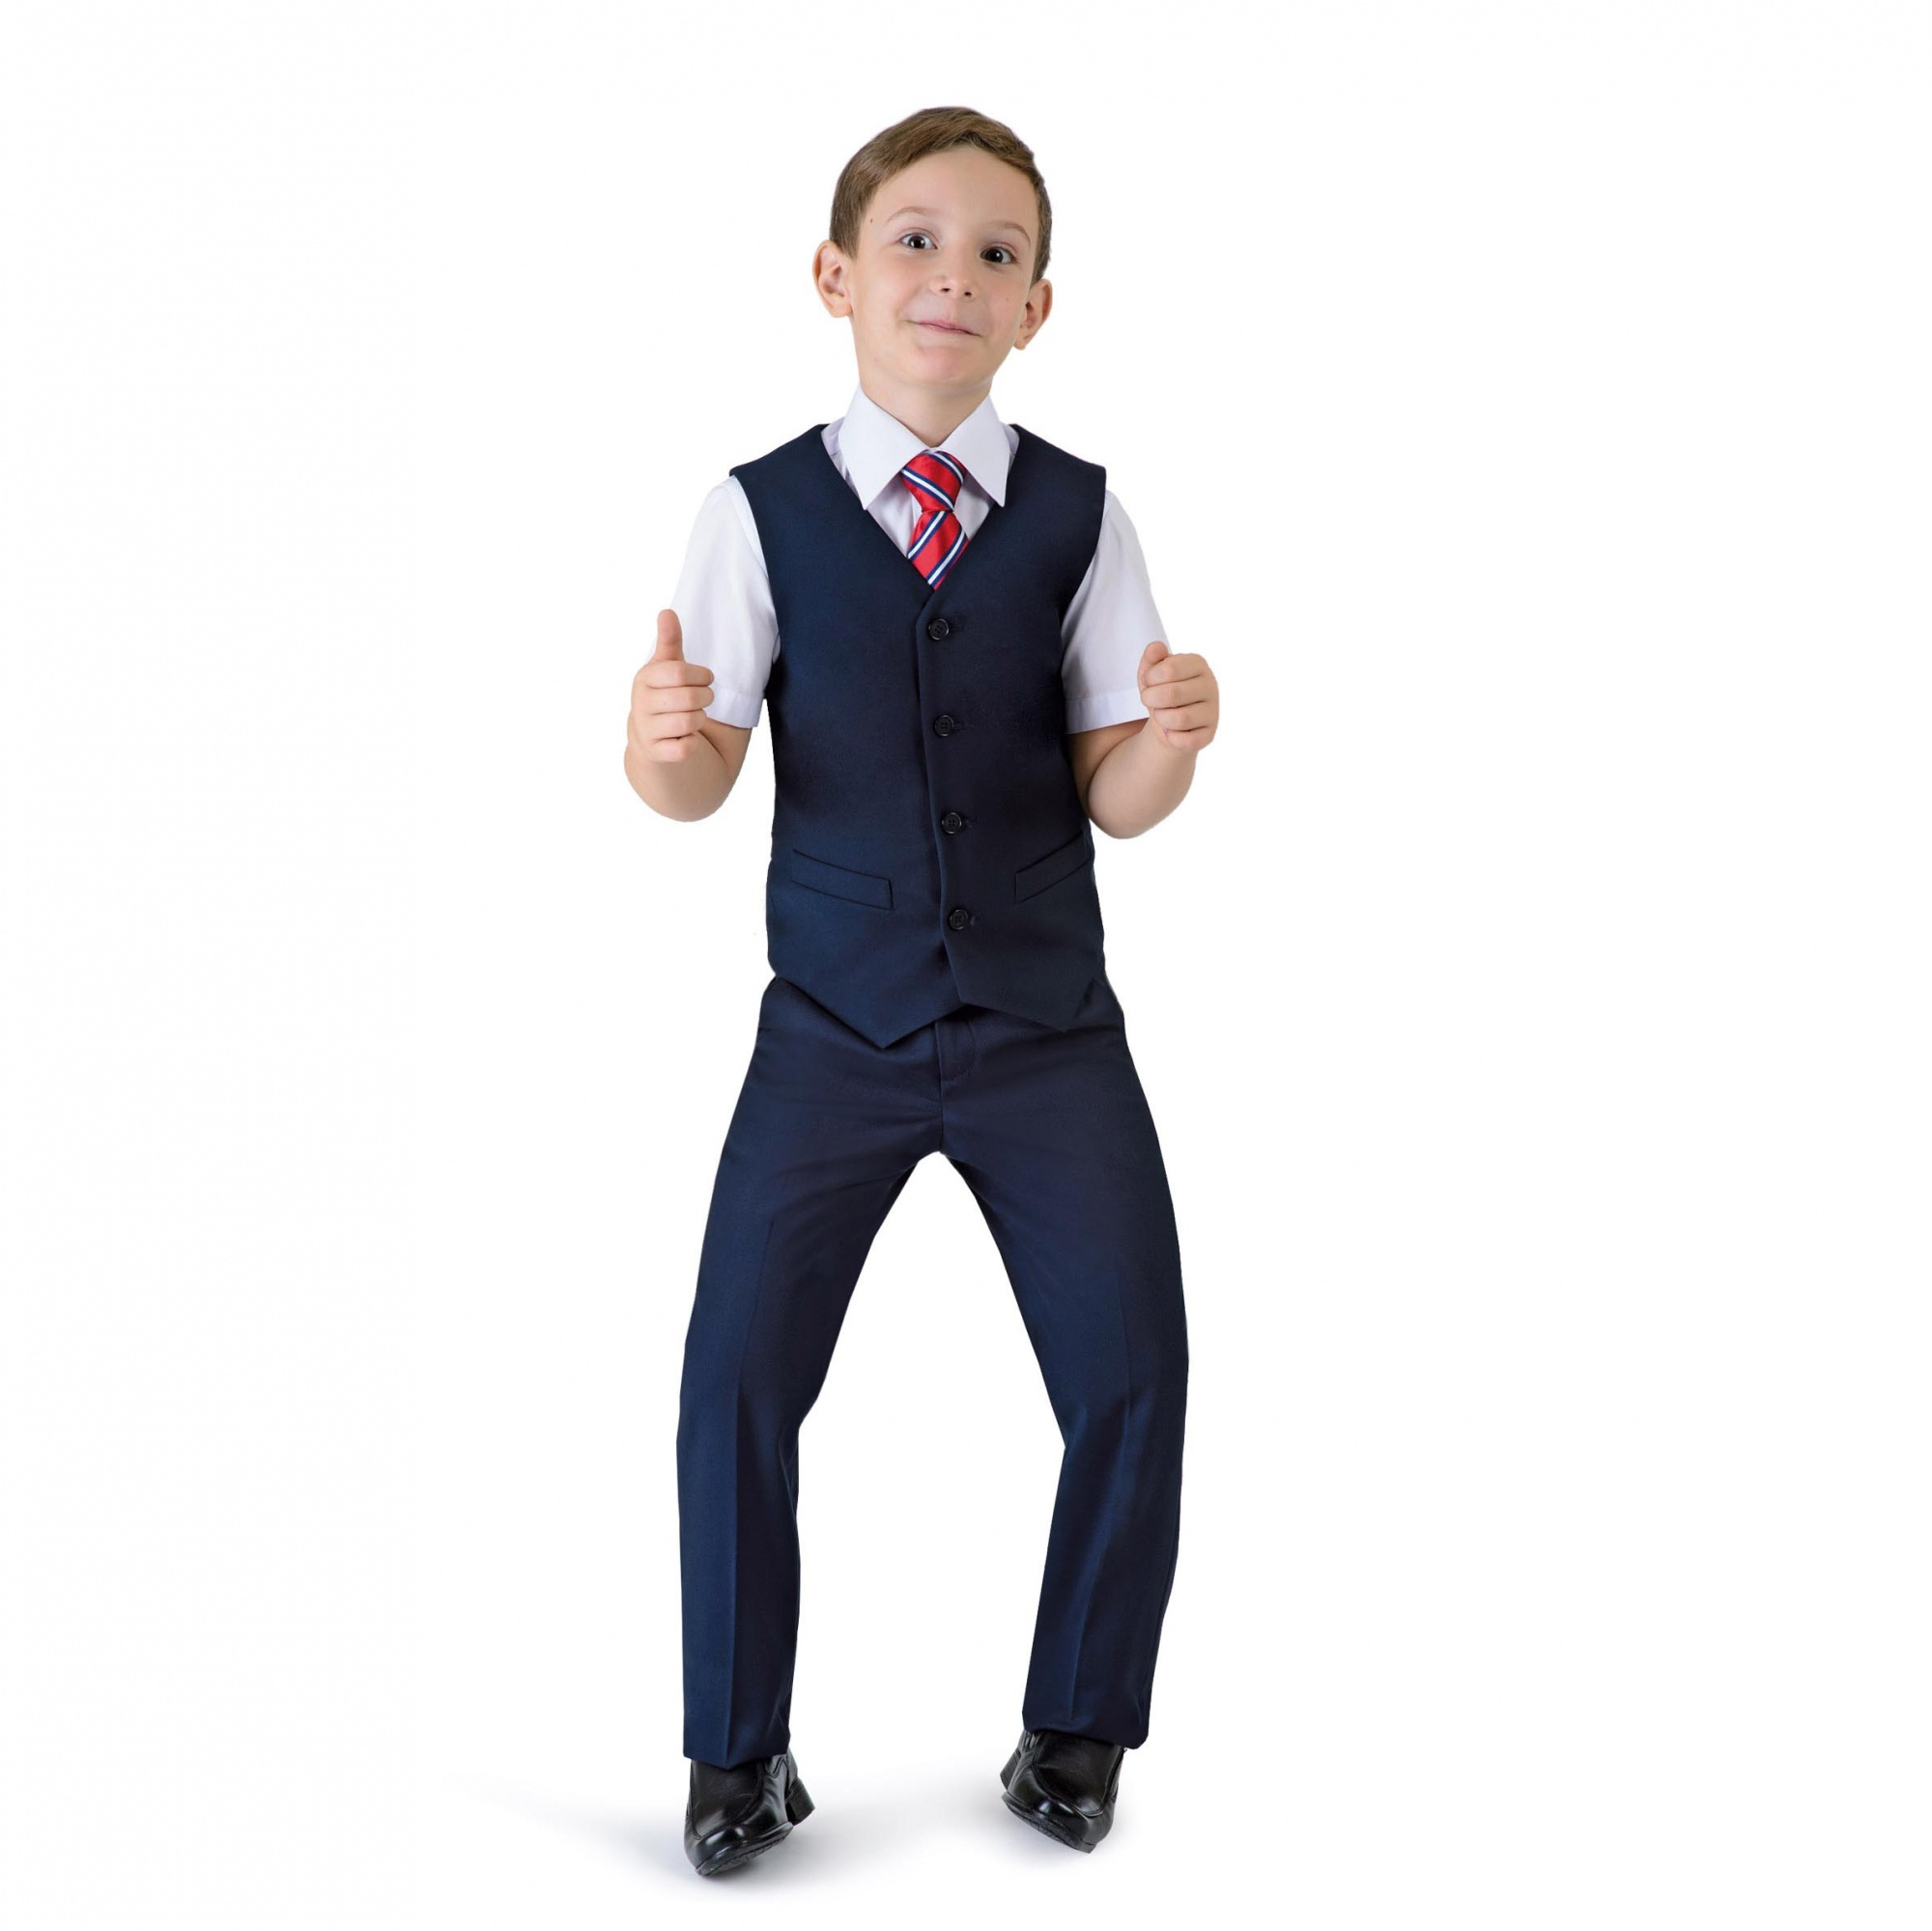 Зауженные брюки — настоящий писк школьной моды. В сочетании с ярким галстуком и стильным жилетом это подчеркнет индивидуальность. Брюки <price>1550 руб.</price>, сорочка от <price>390 руб.</price> (1–4-й классы).